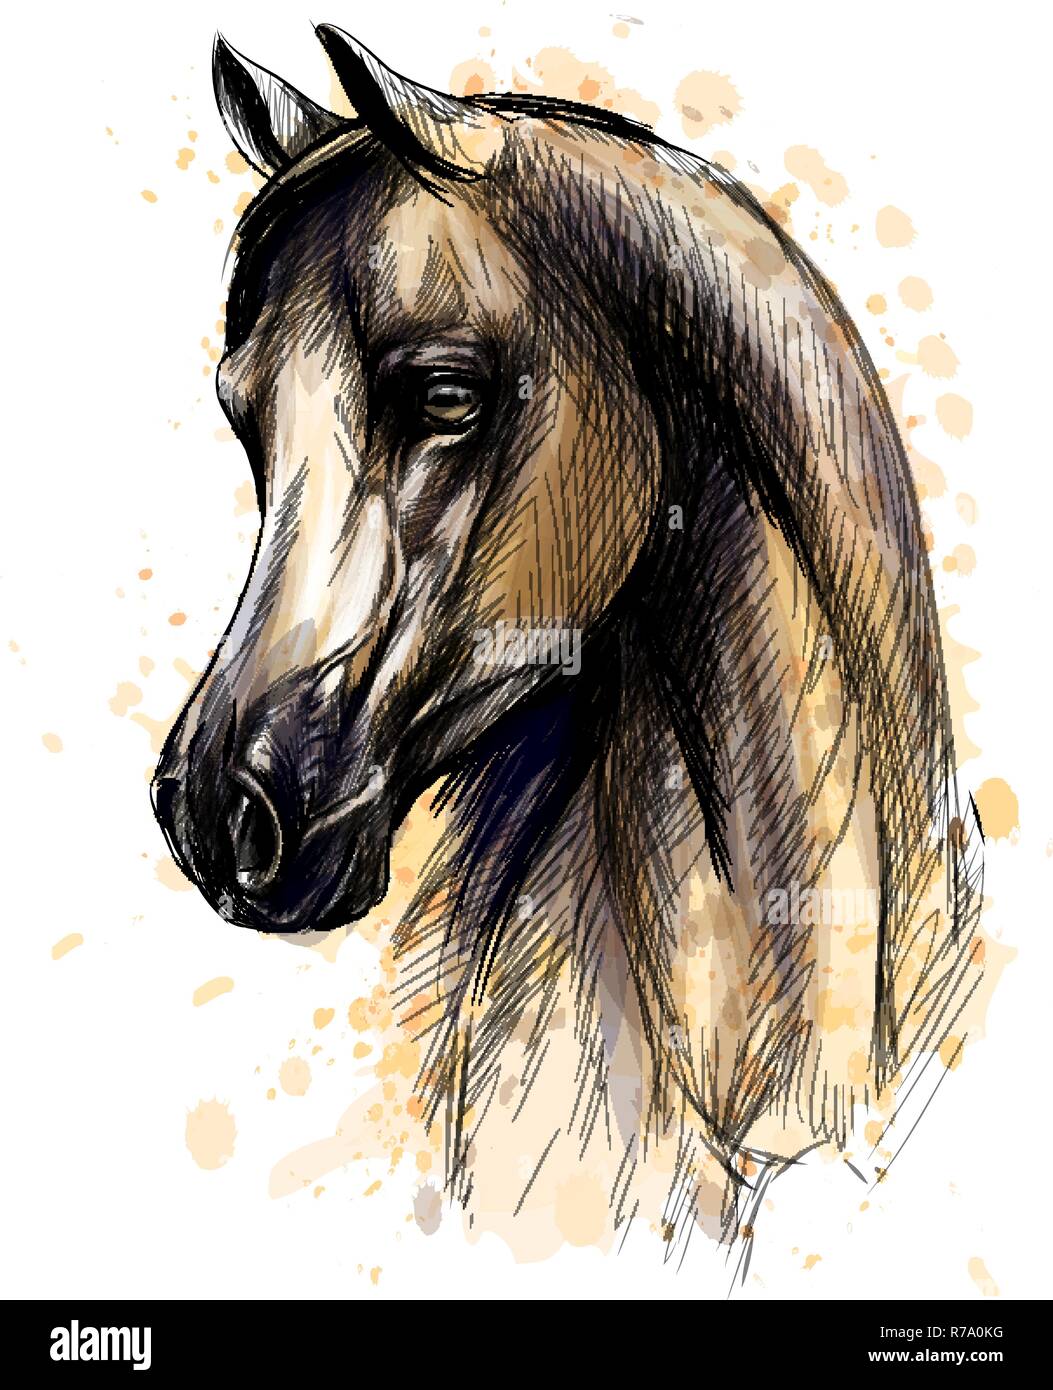 Pferd stehend Seitenansicht, Hand doodle gezeichnet, Skizze in retro  Tiefdruck stil Abbildung Stockfotografie - Alamy